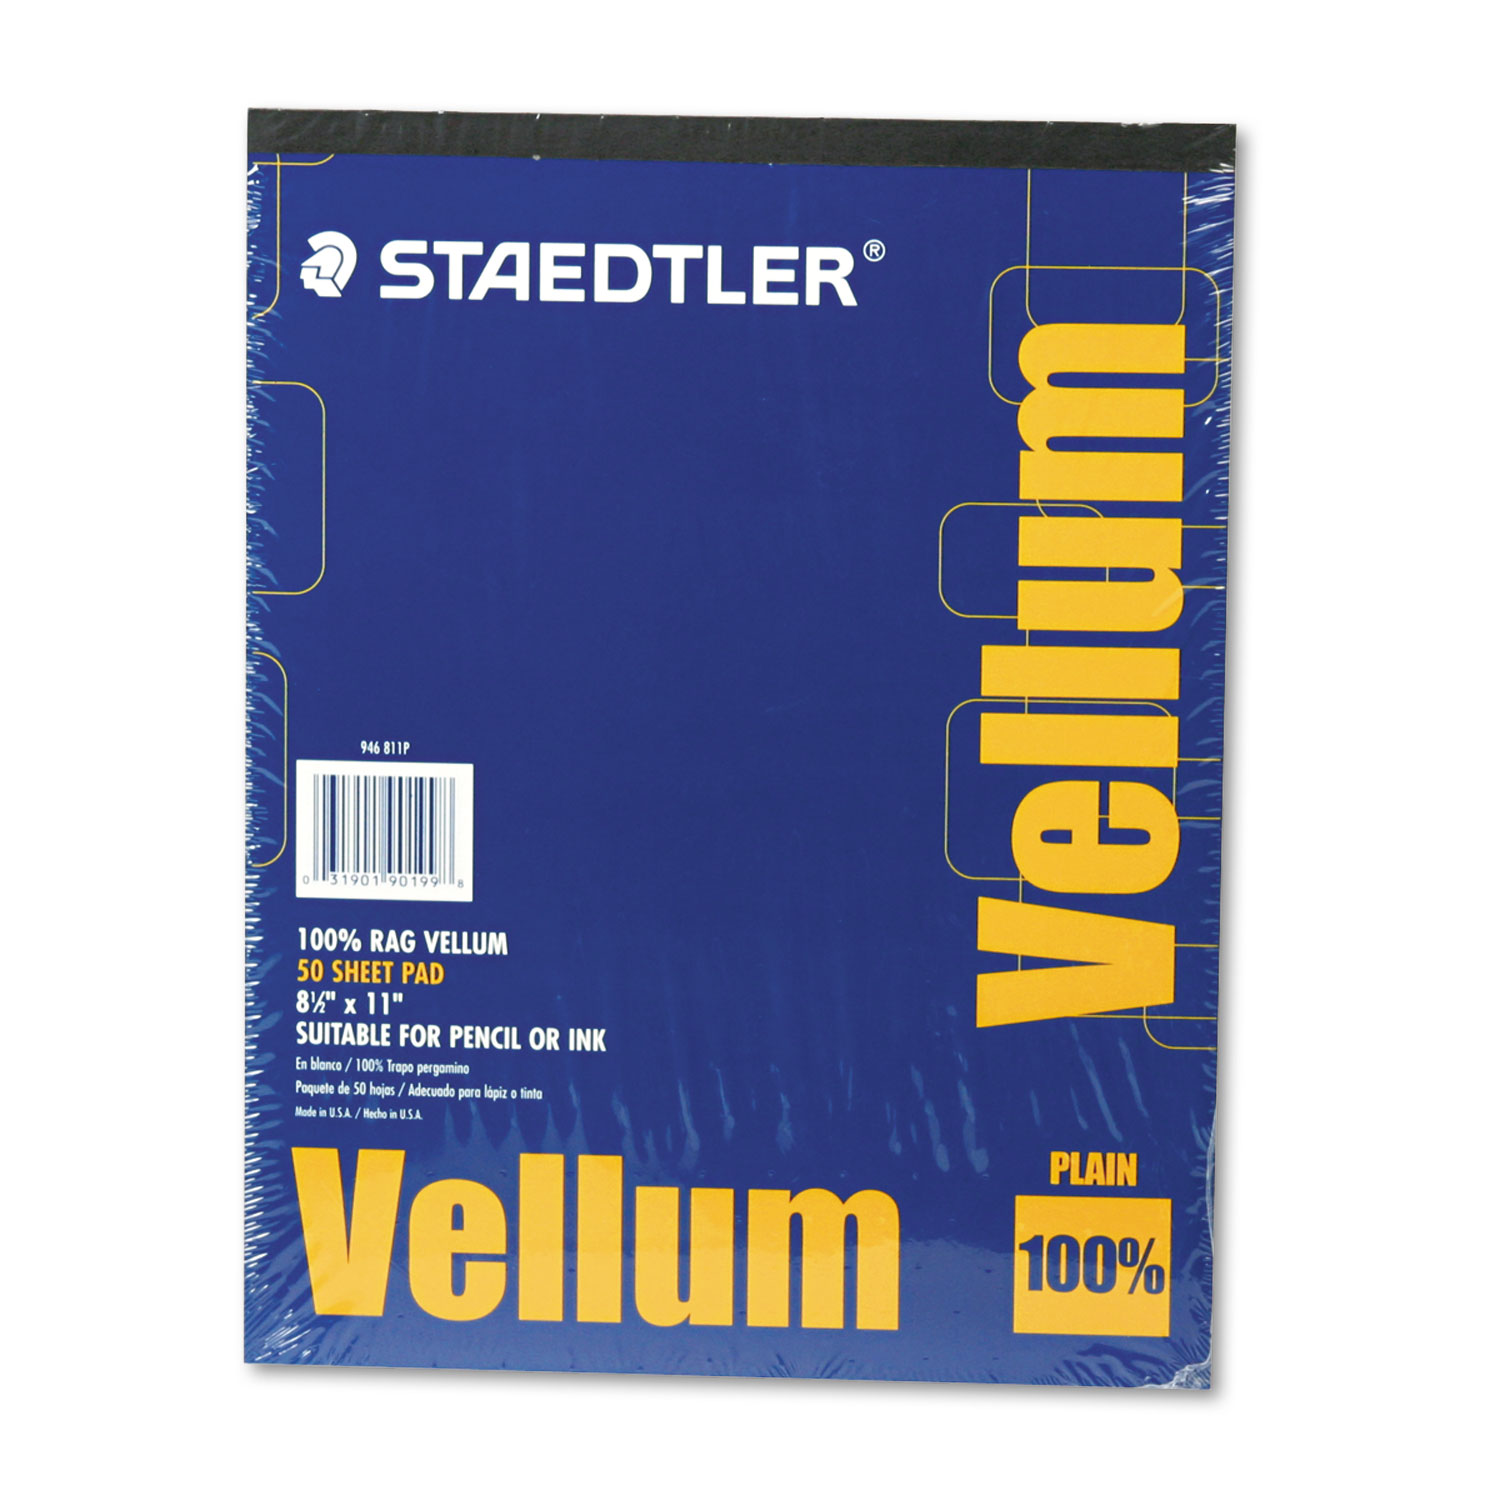 Staedtler® Mars Translucent Vellum Art & Drafting Paper, 16lb, 8.5 x 11, 50/Pad